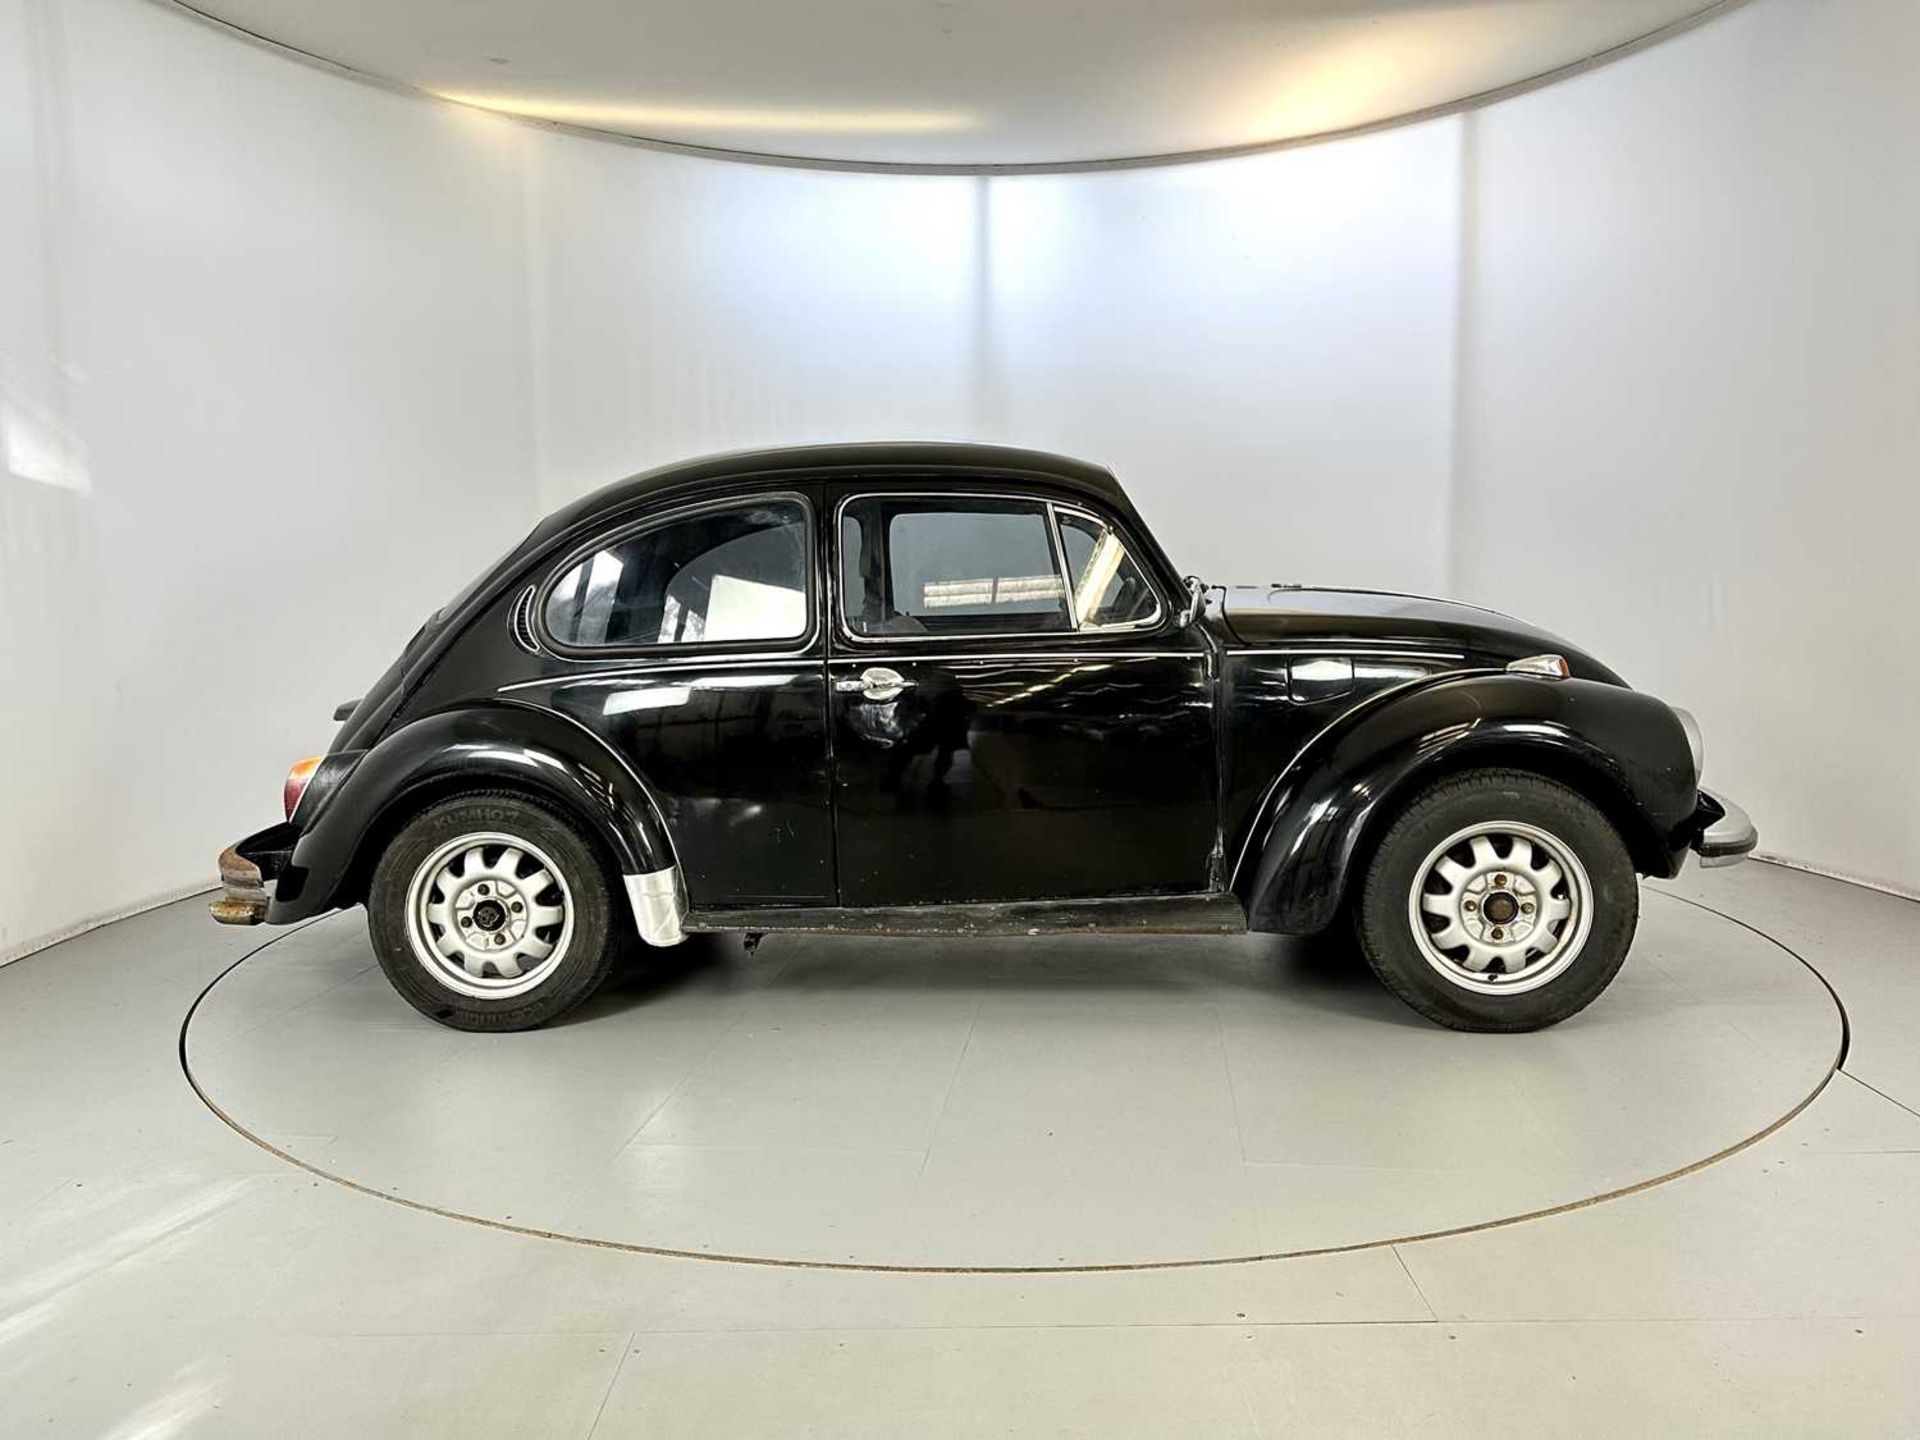 1971 Volkswagen Beetle - Image 11 of 29